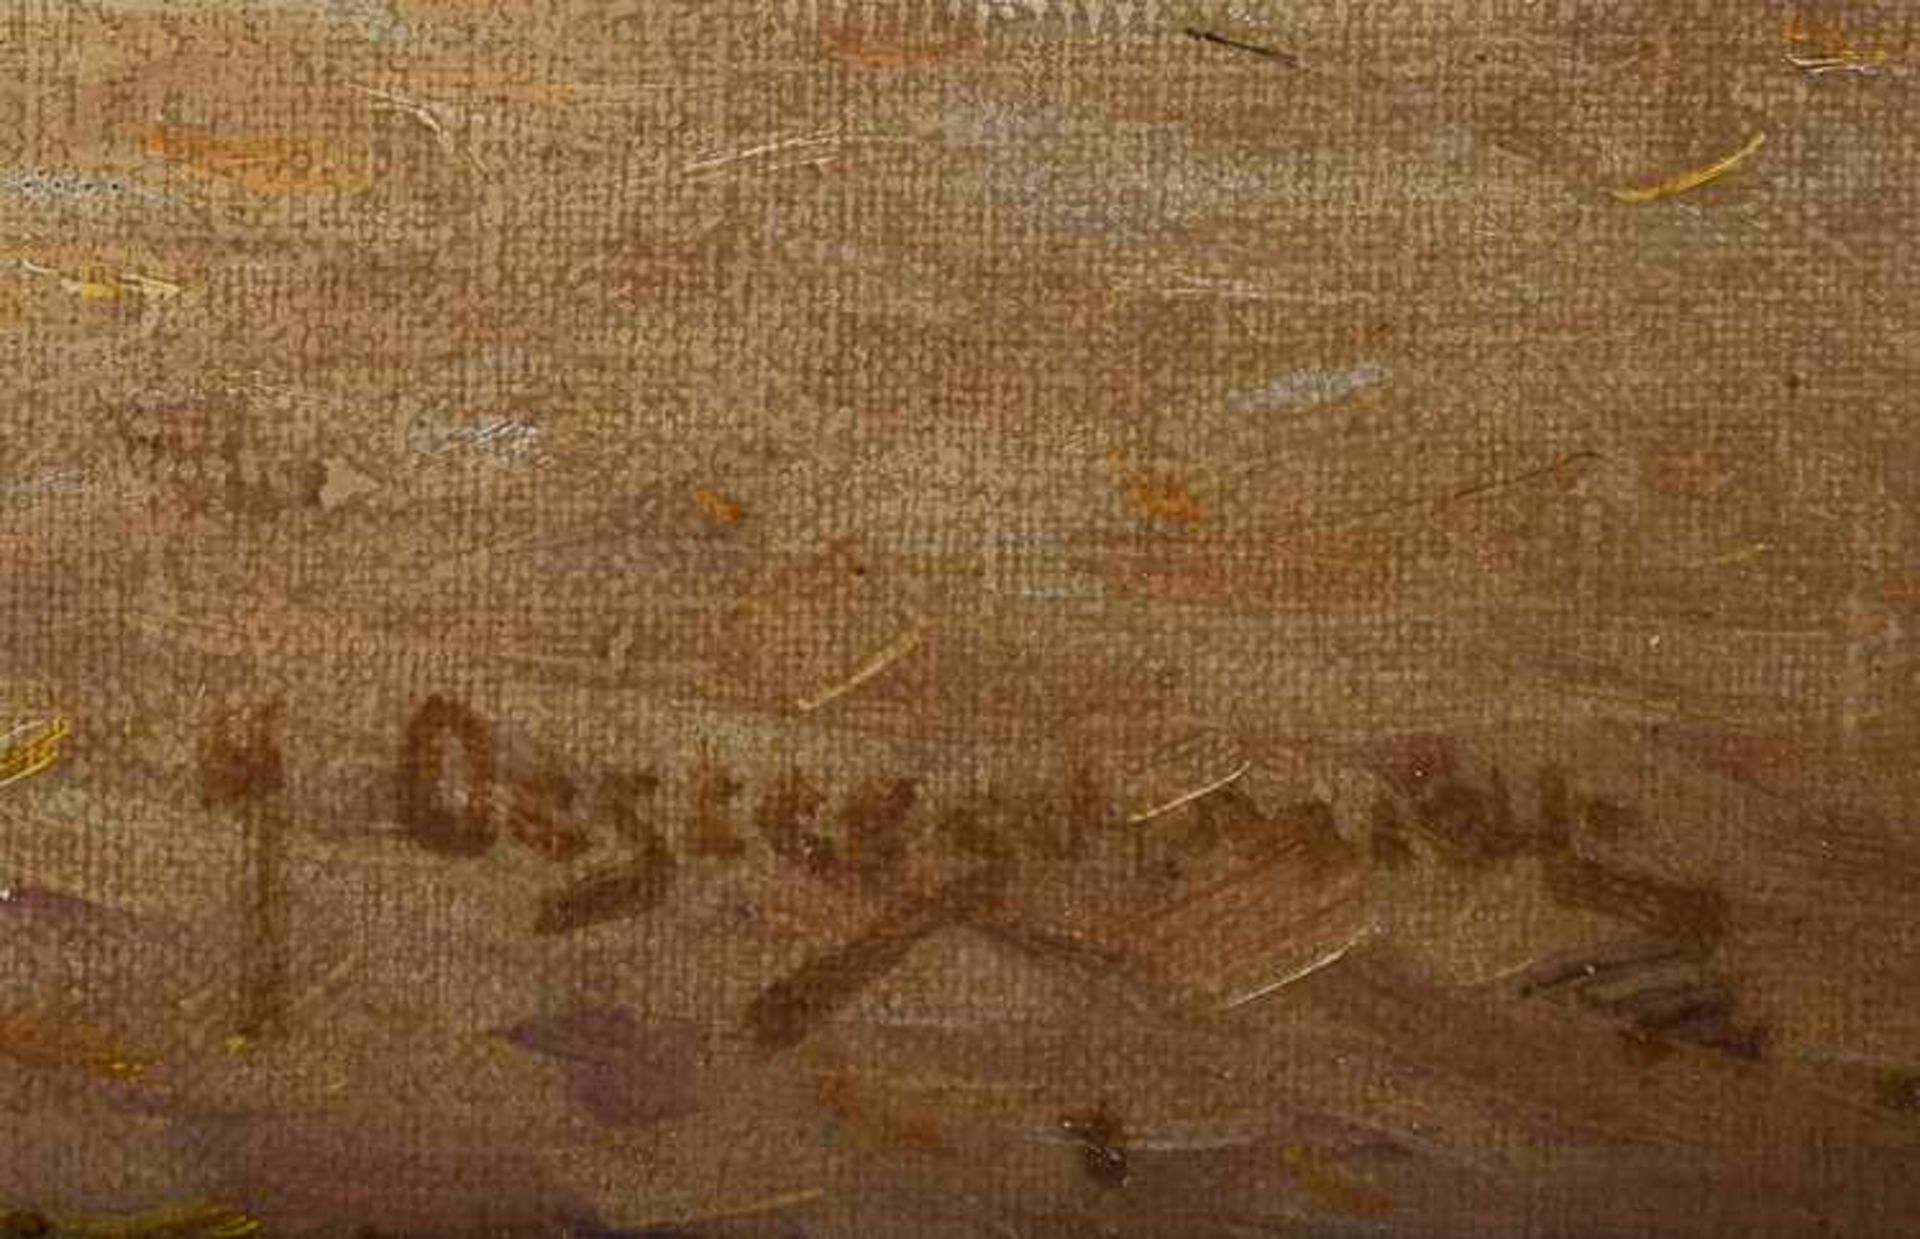 Heinrich OESTERSCHMIDT (XIX-XX) "Bauernkate unter Bäumen mit Hühnern" Gemälde Öl/Leinwand, 40,5 cm x - Image 6 of 7